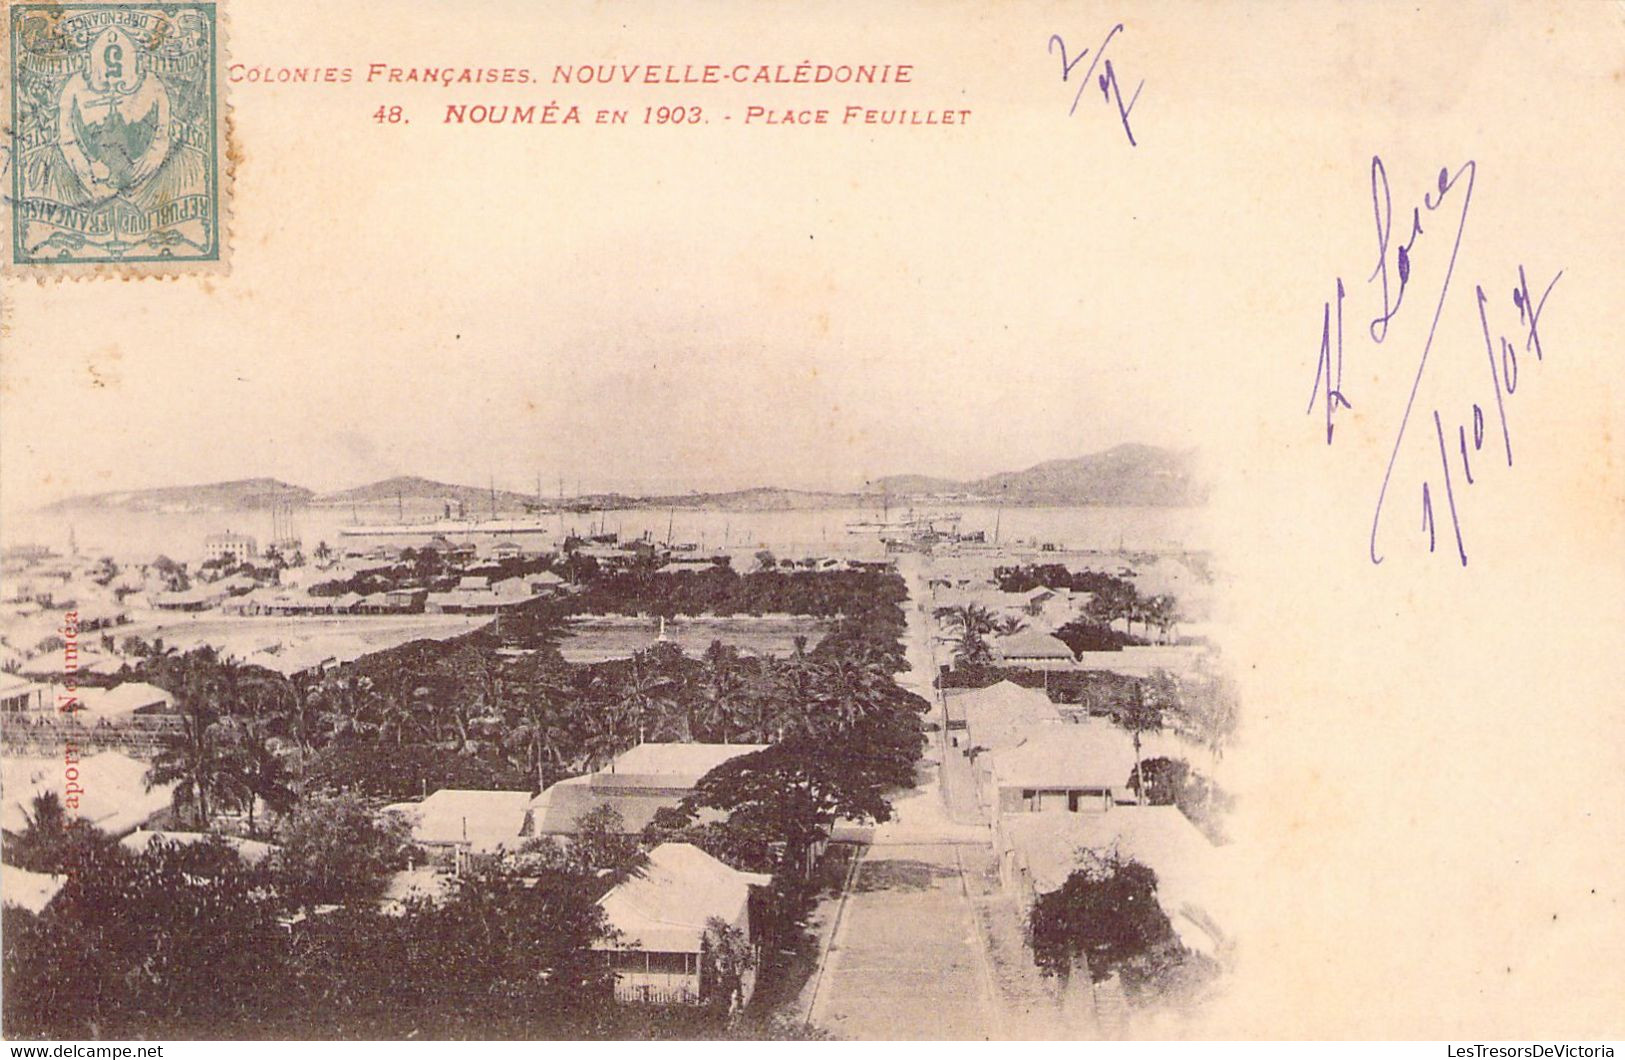 NOUVELLE CALEDONIE - Colonies Françaises - Nouméa En 1903 - Place Feuillet - Carte Postale Ancienne - Nouvelle Calédonie